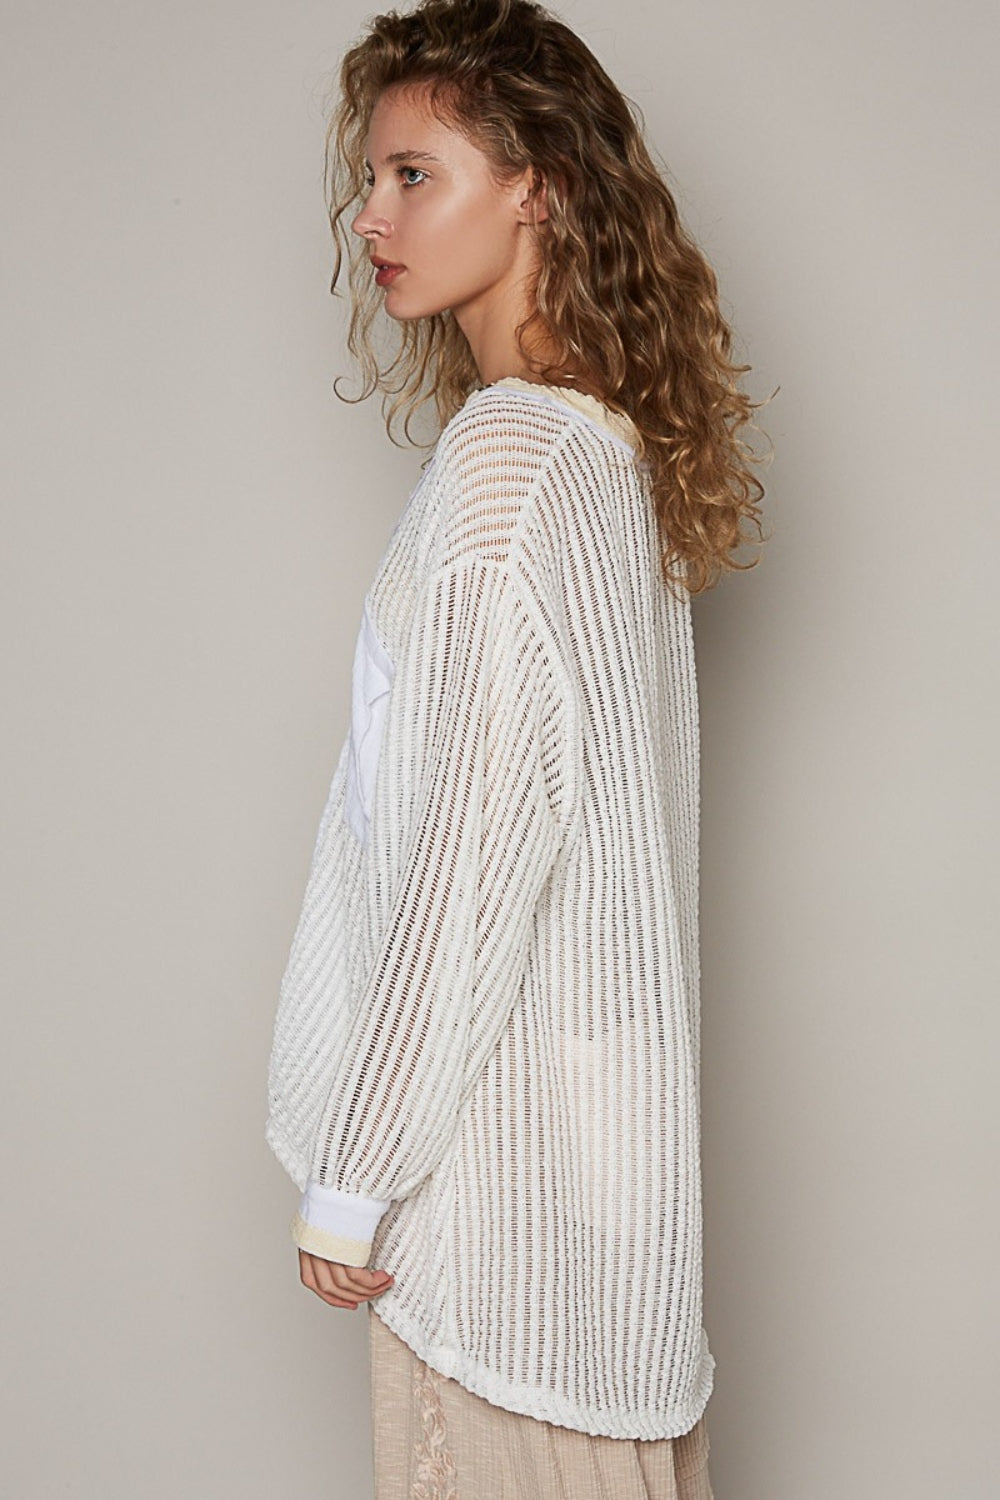 Off White V-Neck Long Sleeve Crochet Top